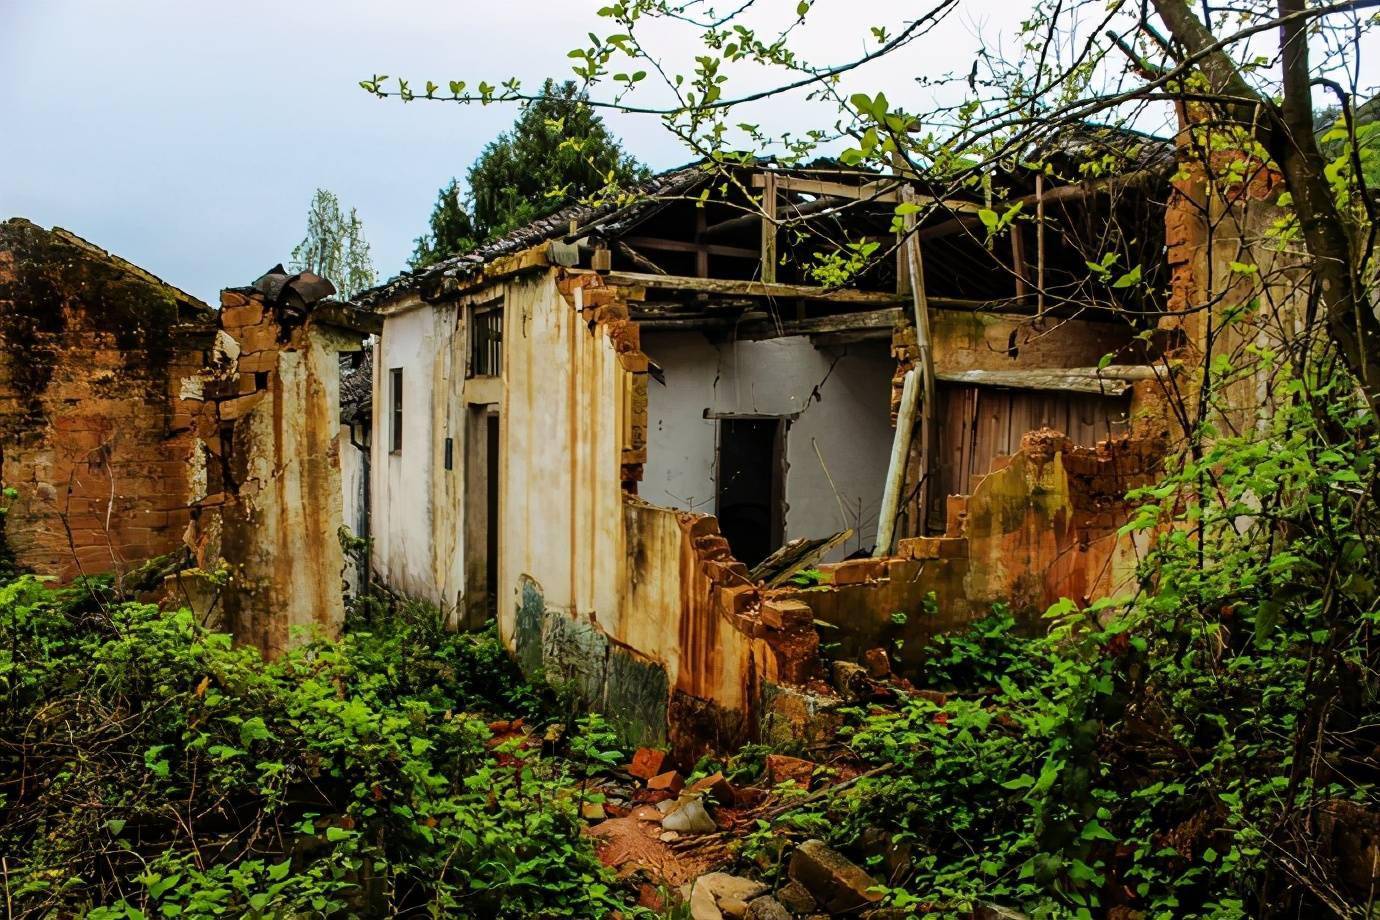 十来年无人居住,让整个村子里的房子杂草丛生,破败不堪,甚至不少房子